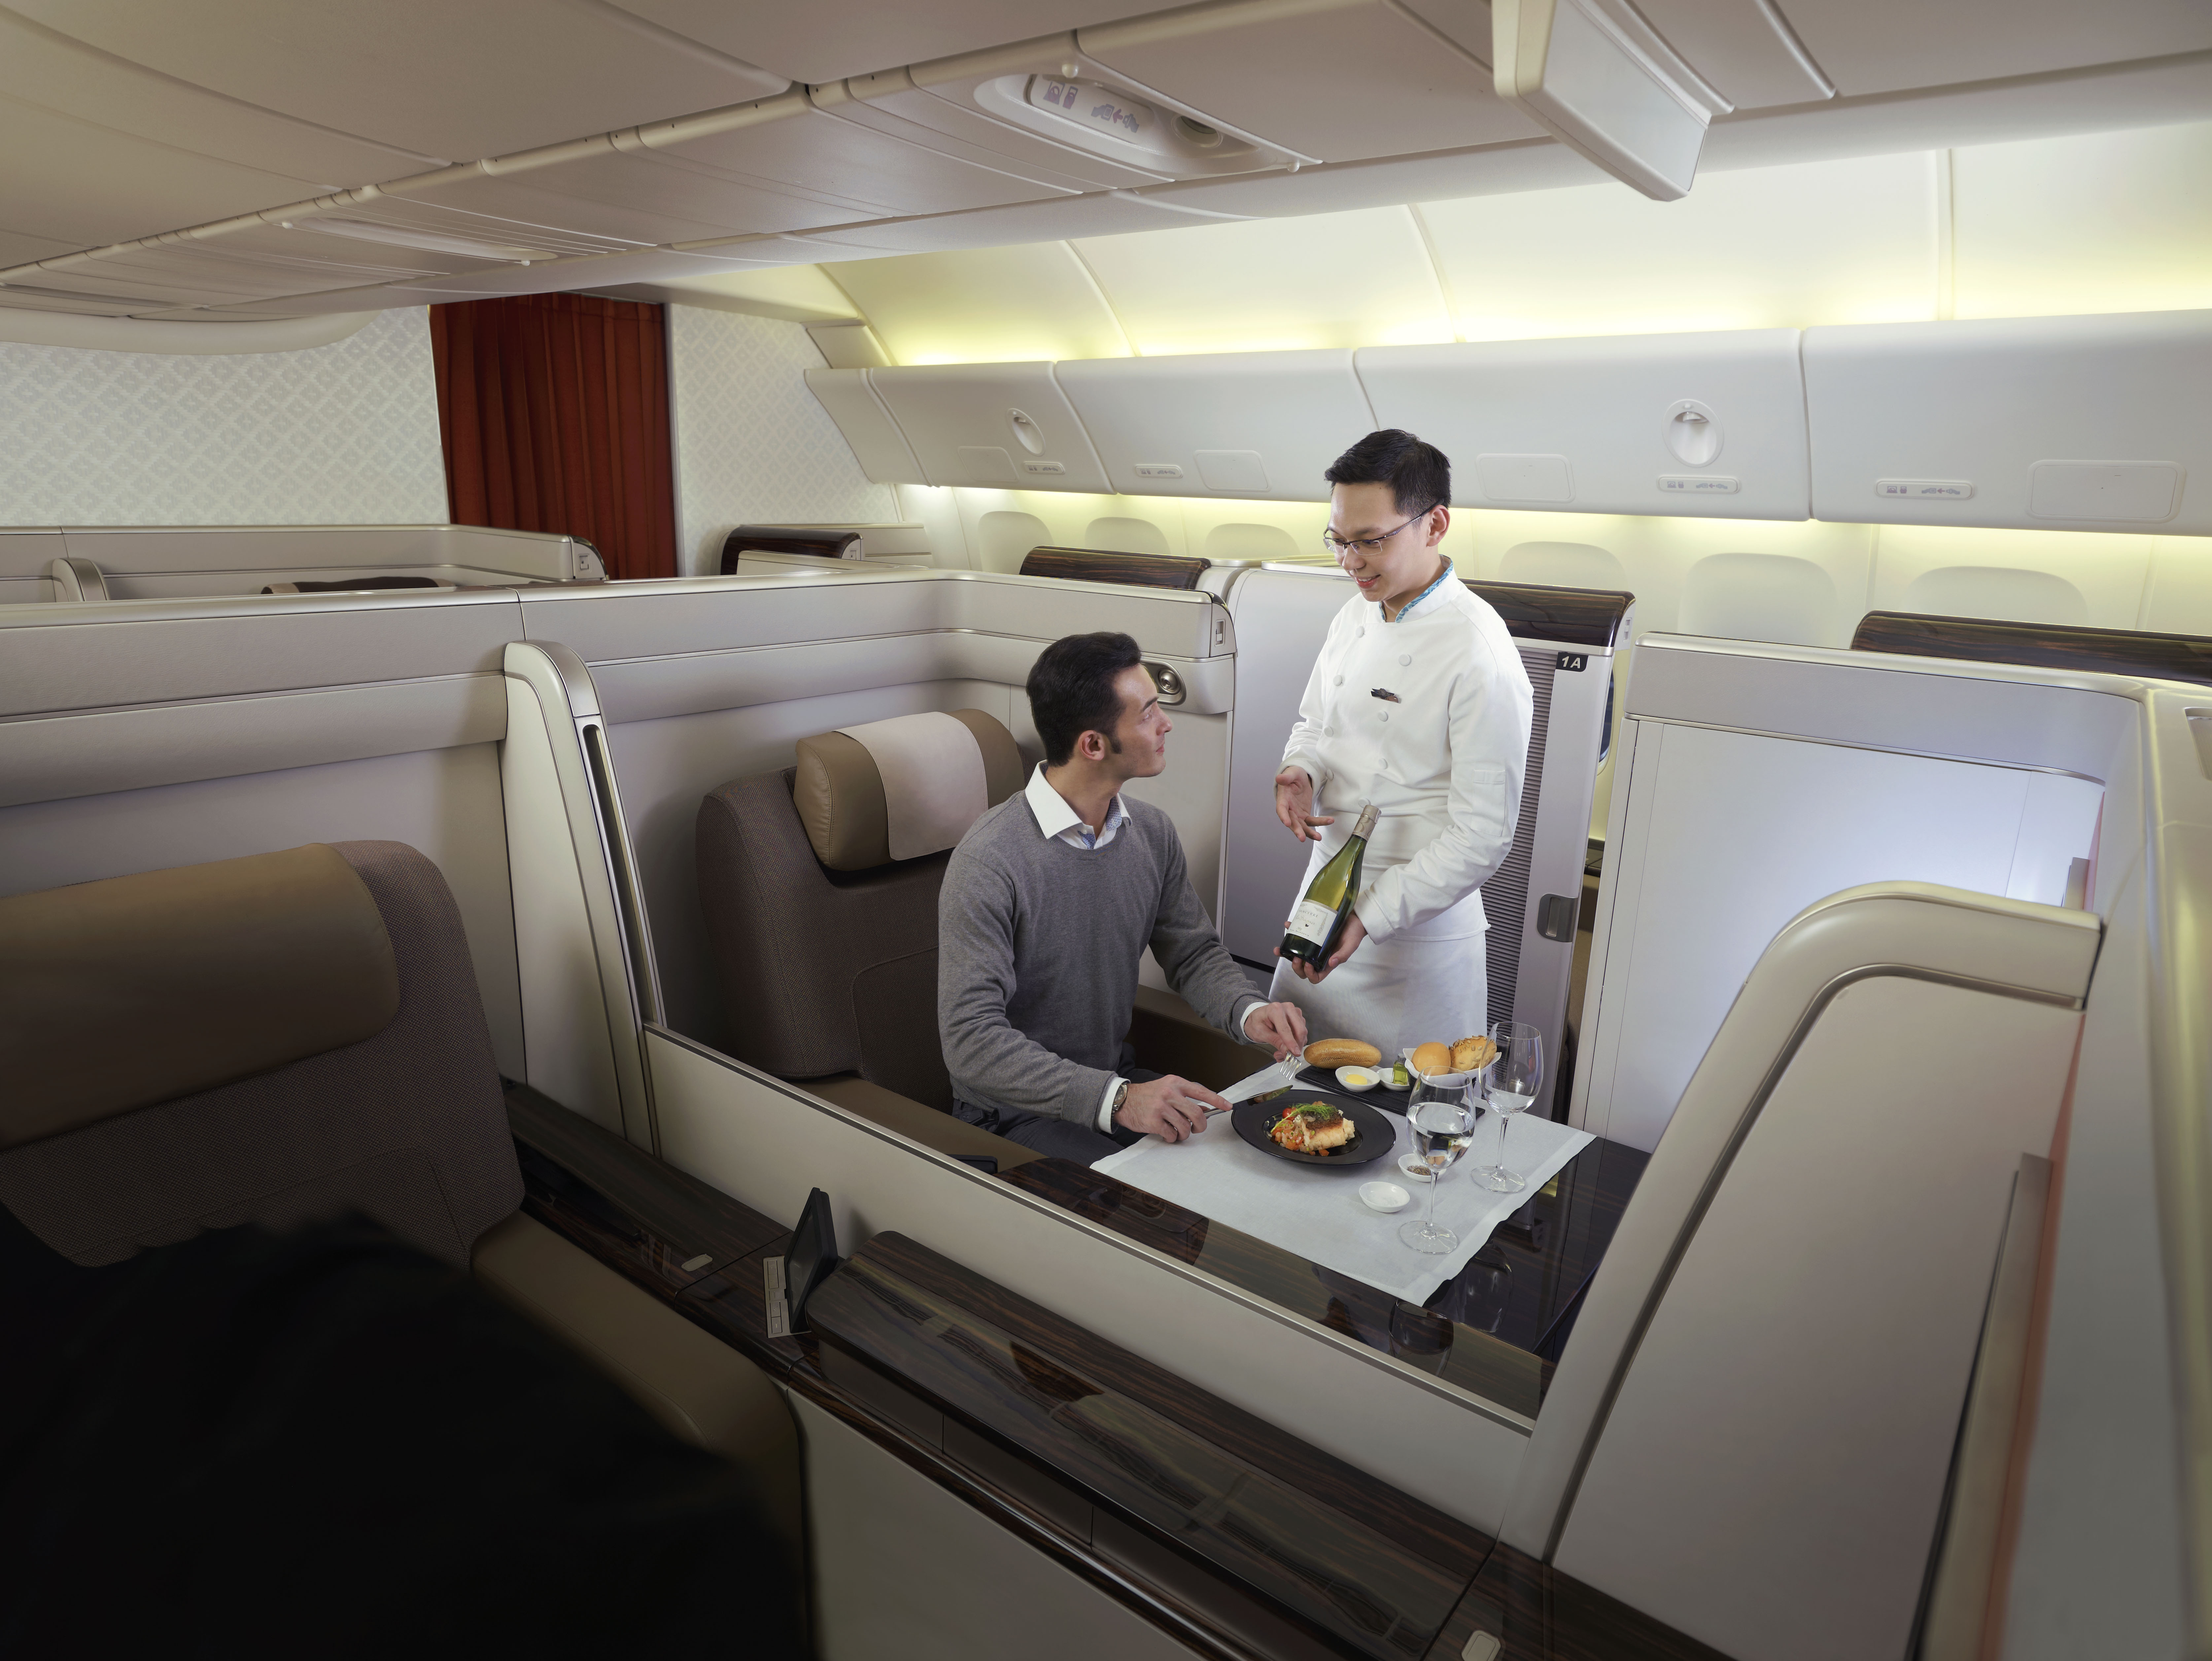 ガルーダ インドネシア航空 東京 成田 デンパサール バリ島 線 にてb777 300er型機の運航開始 ガルーダ インドネシア 航空会社のプレスリリース